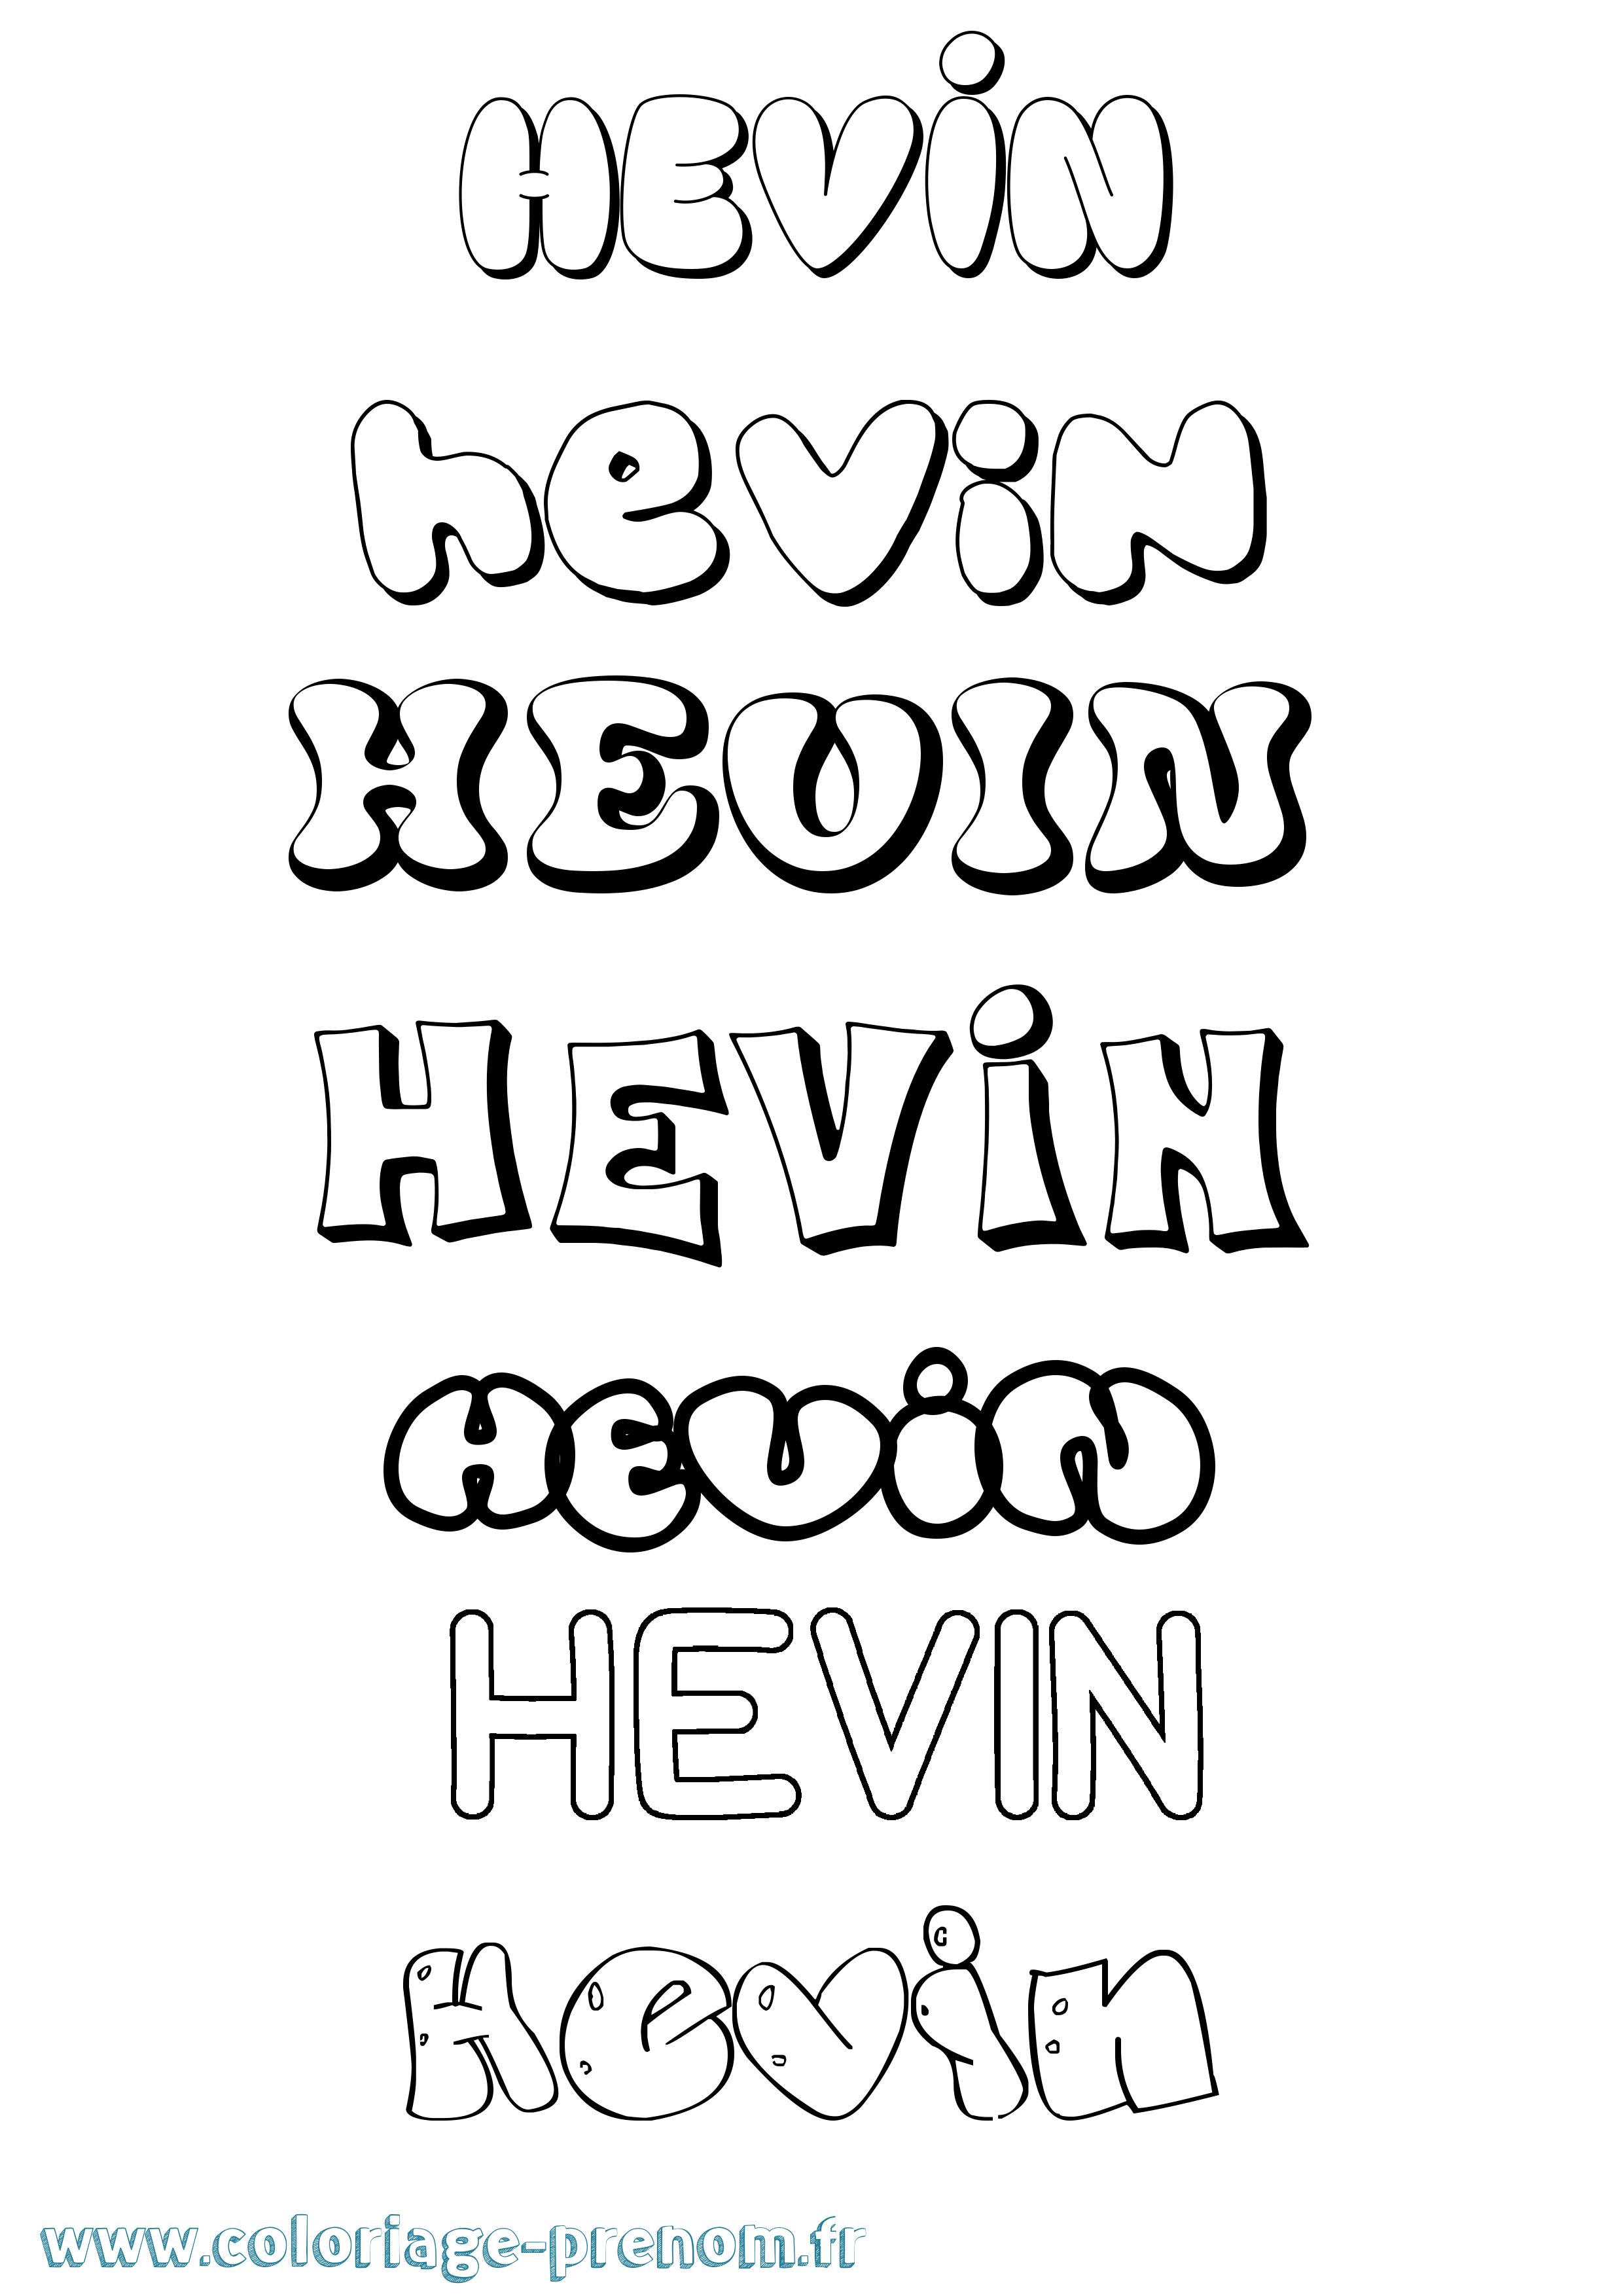 Coloriage prénom Hevin Bubble